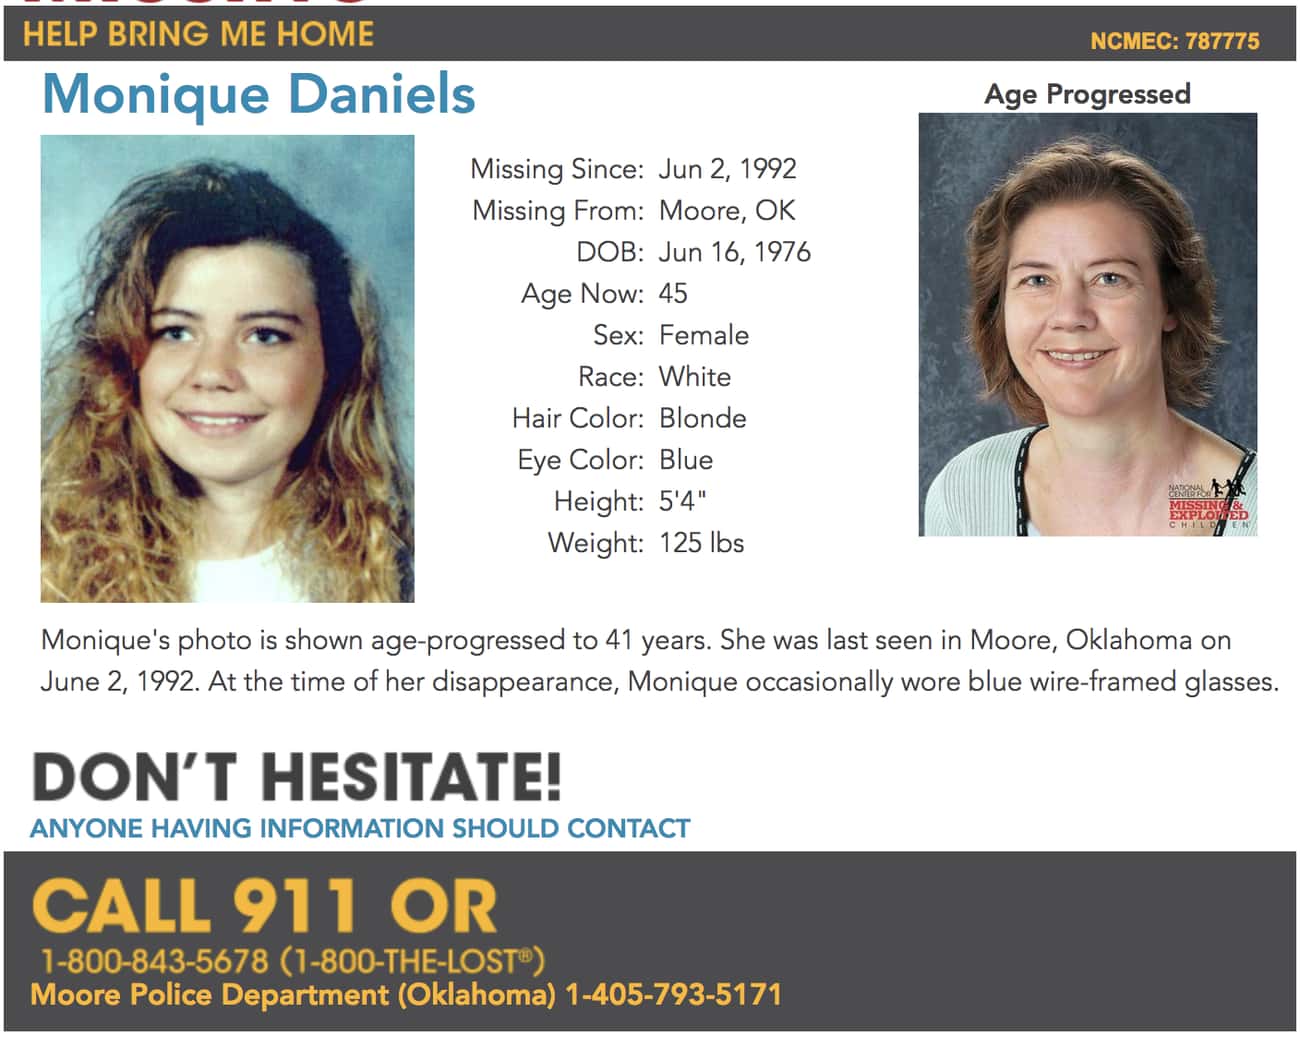 Monique Daniels's Parents Claim She Ran Away, But Her Sister Paints A